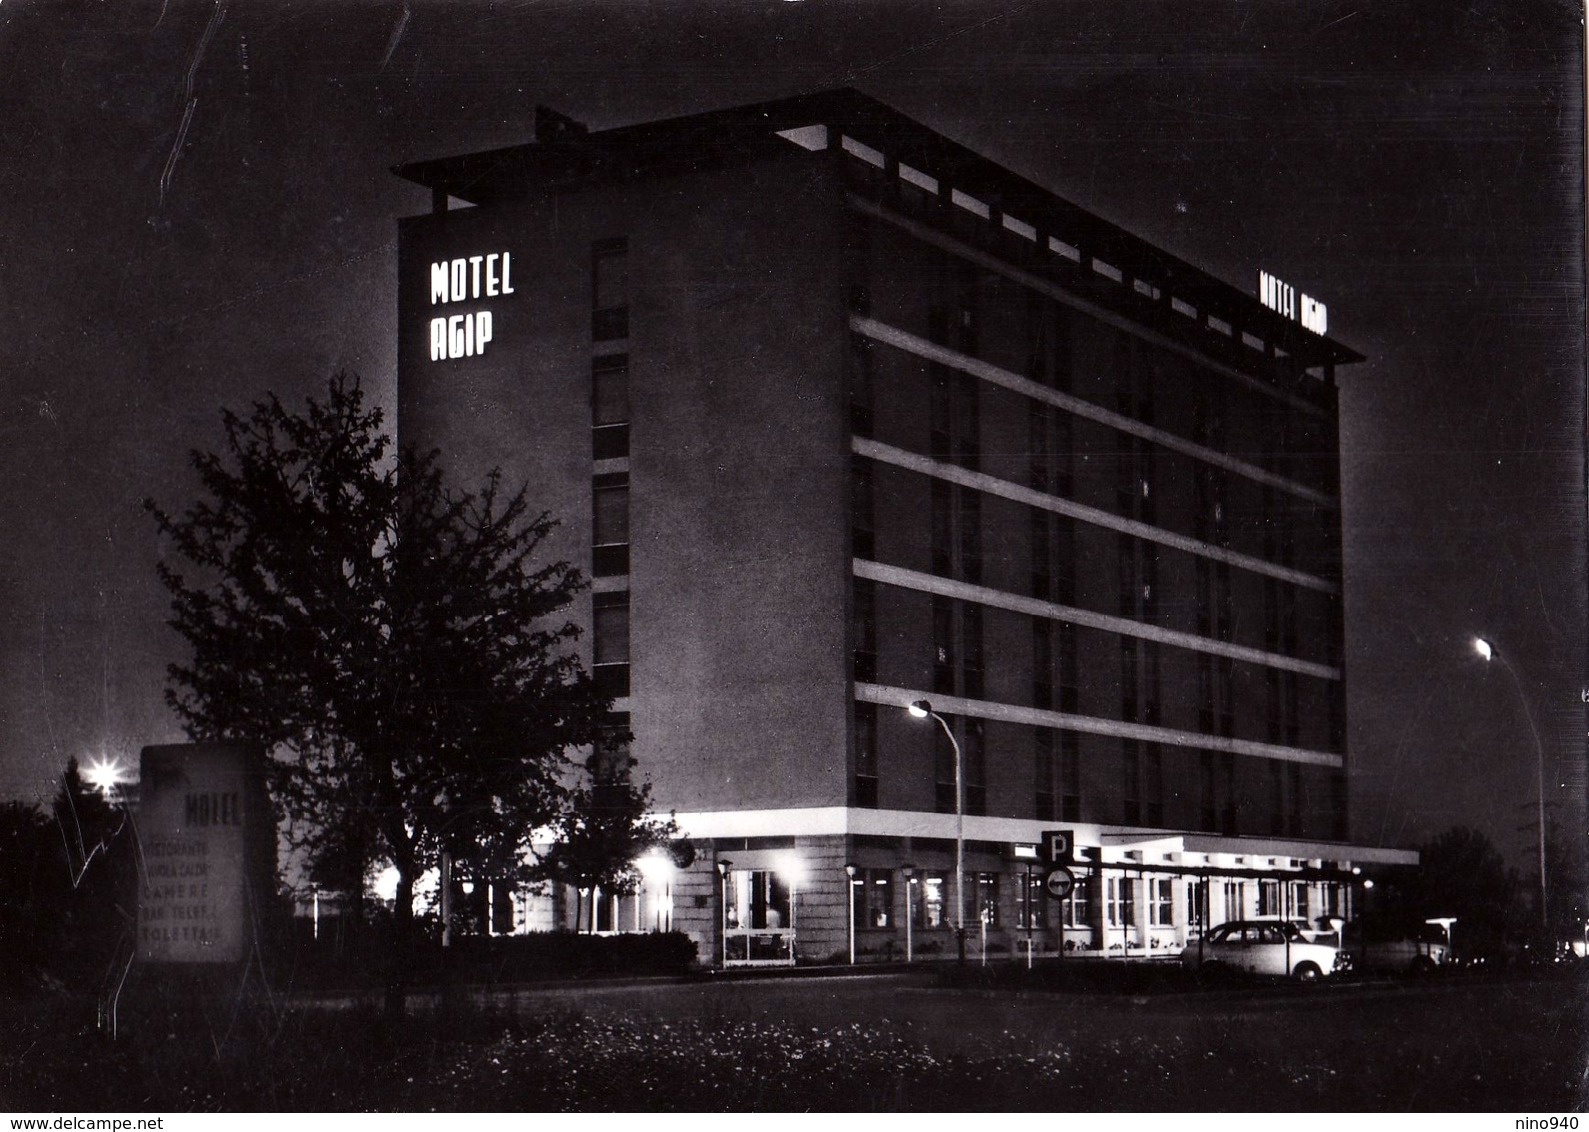 TORINO - Motel AGIP - Notturno - F/G - V: 1968 - Wirtschaften, Hotels & Restaurants